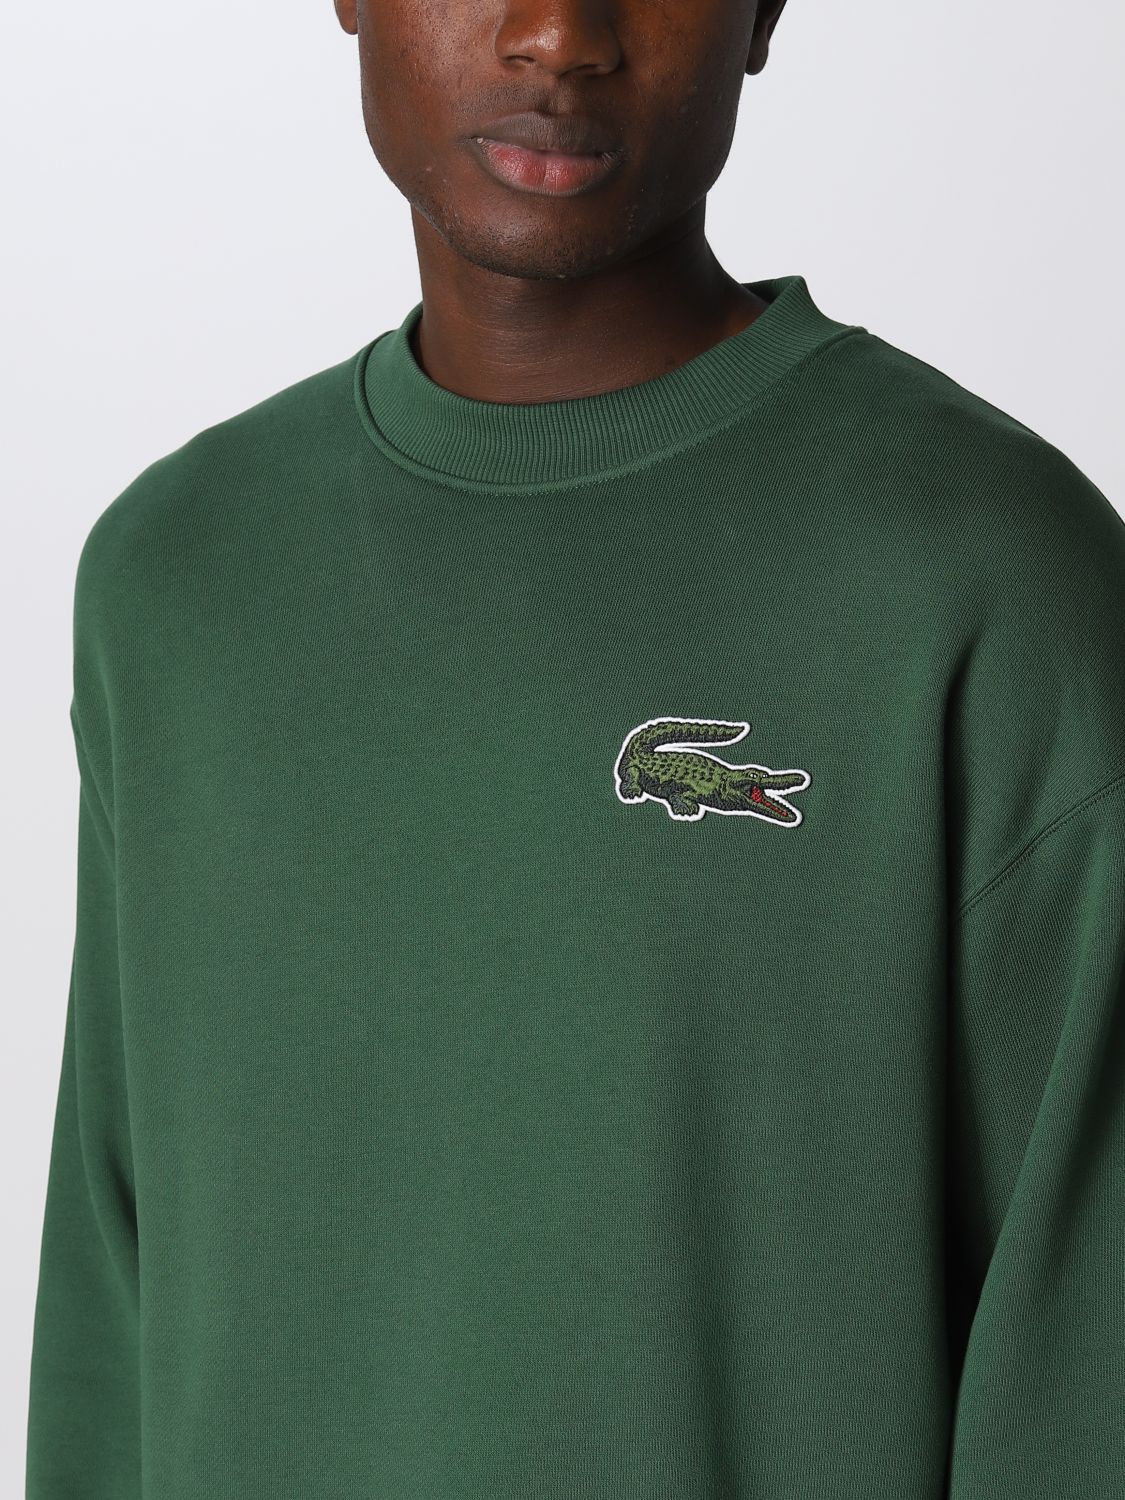 LACOSTE: sweatshirt for man - Green | Lacoste sweatshirt SH6405 online ...